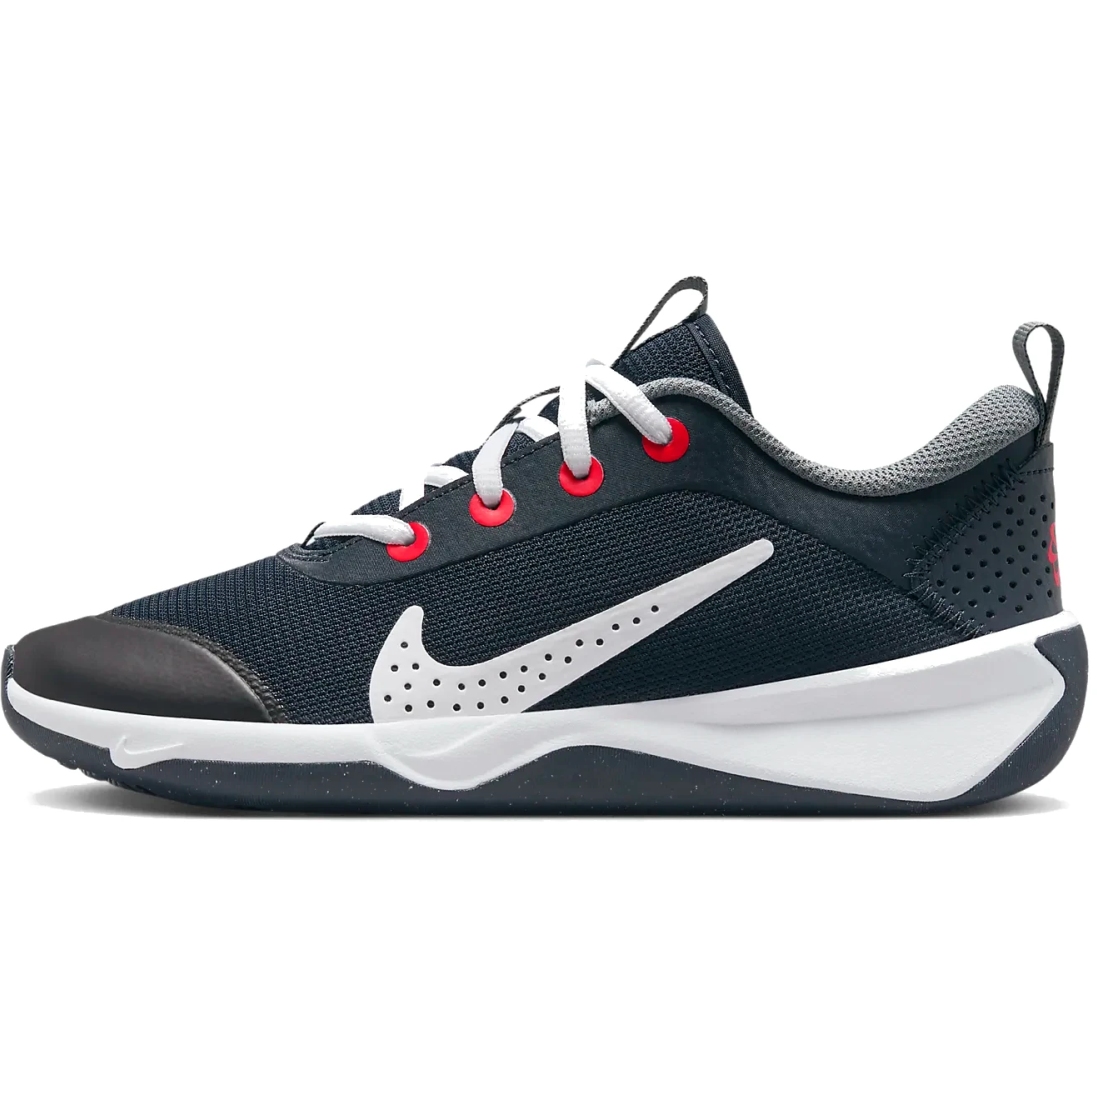 Immagine prodotto da Nike Scarpe Fitness Bambini - Omni Multi-Court - dark obsidian/smoke grey/bright crimson/white DM9027-402